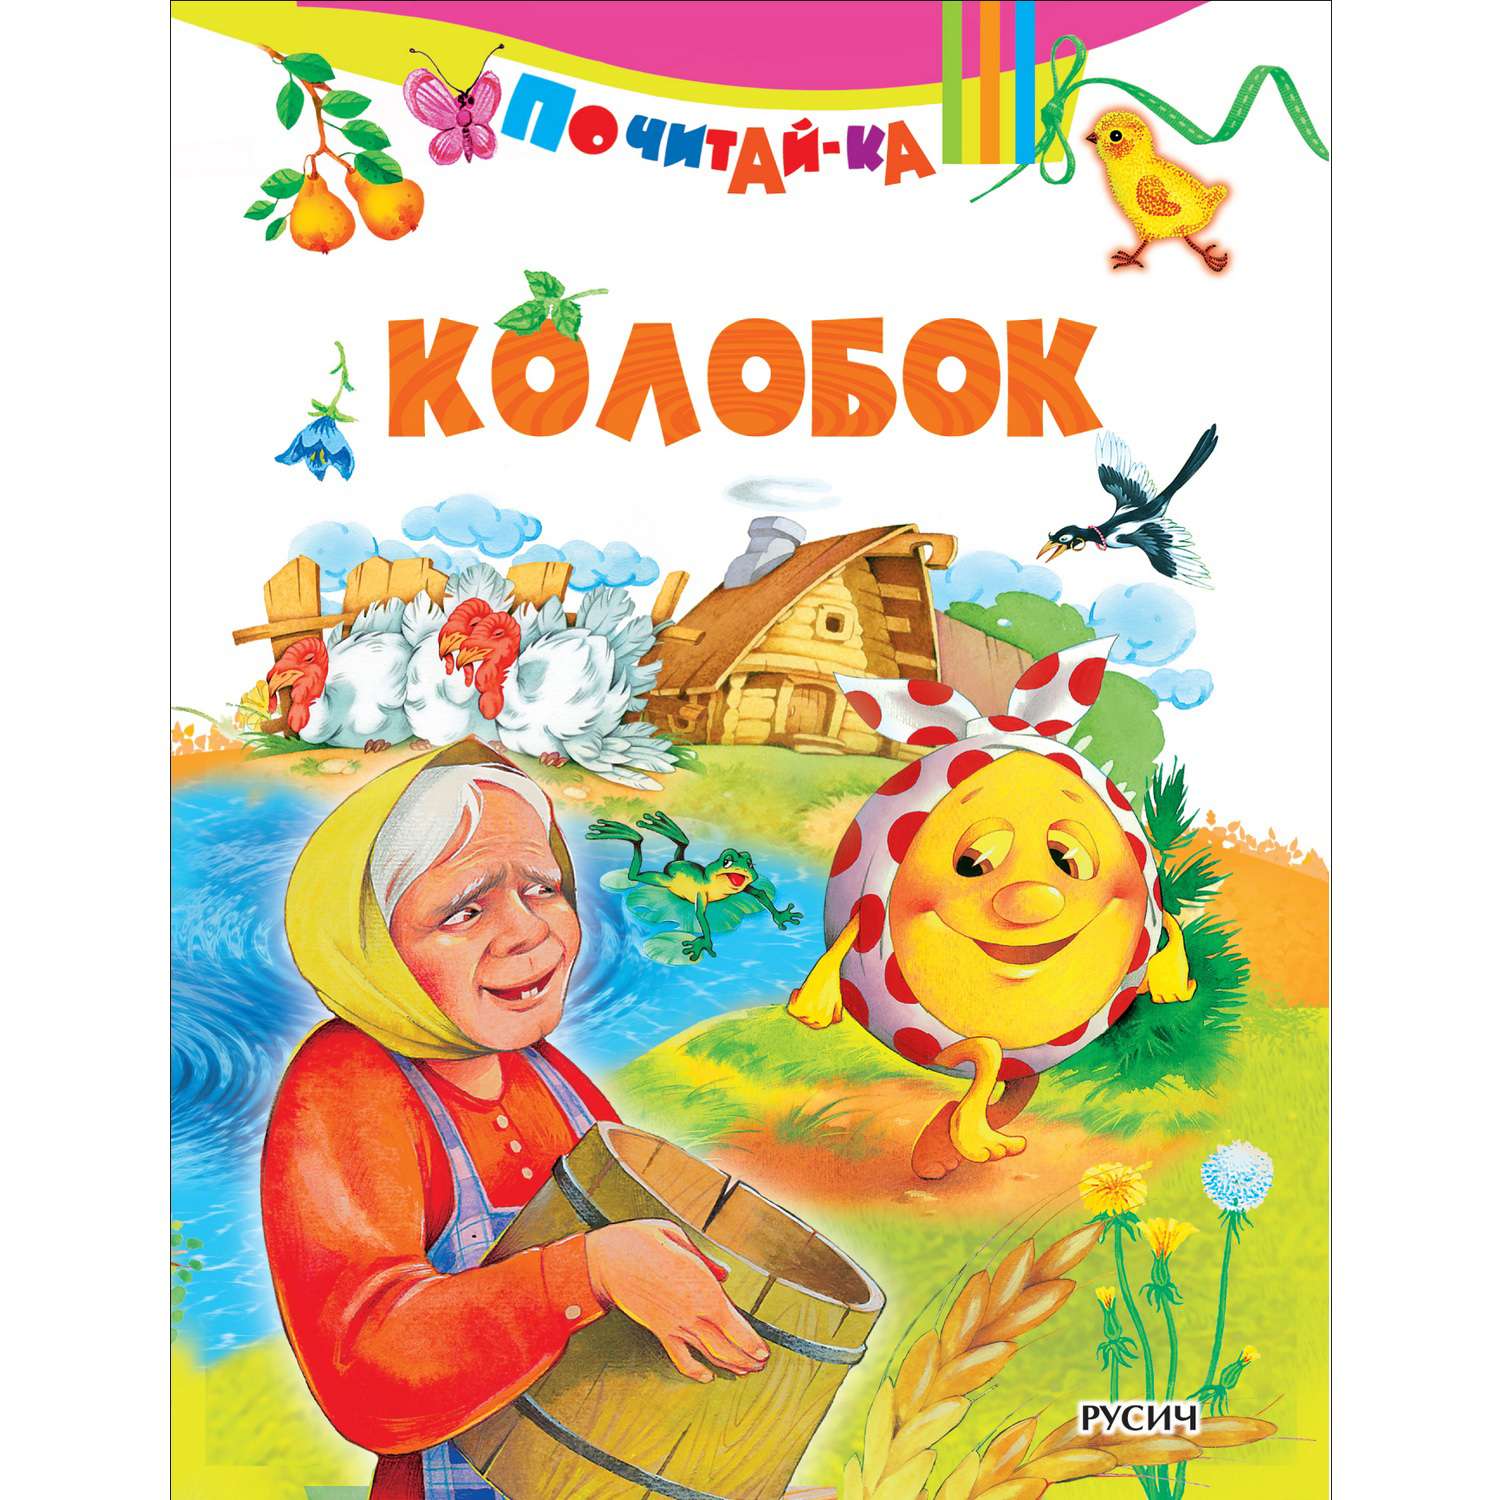 Книга Русич Колобок - фото 1